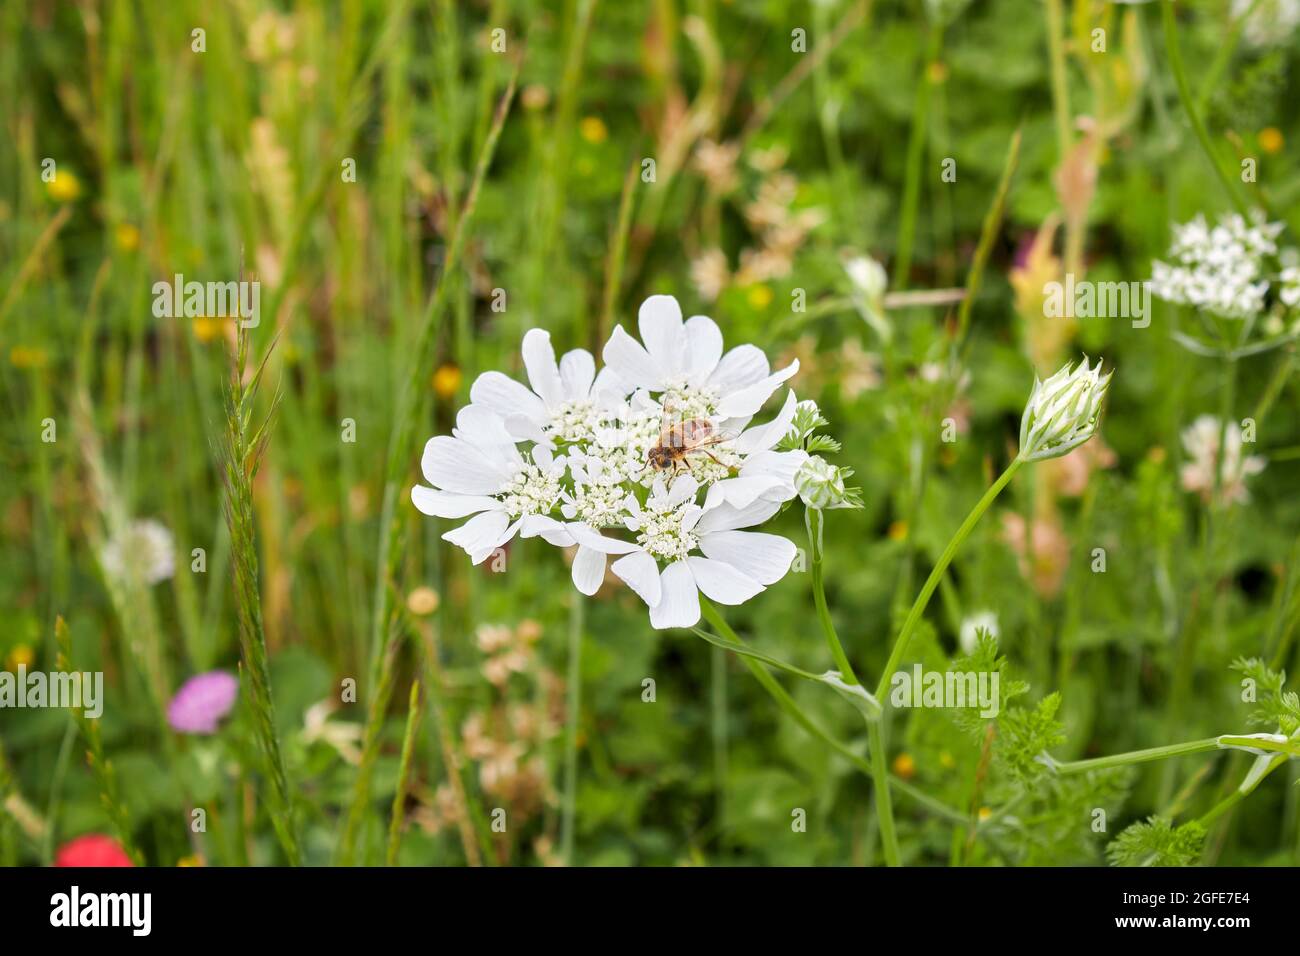 Orlaya grandiflora white flower Stock Photo